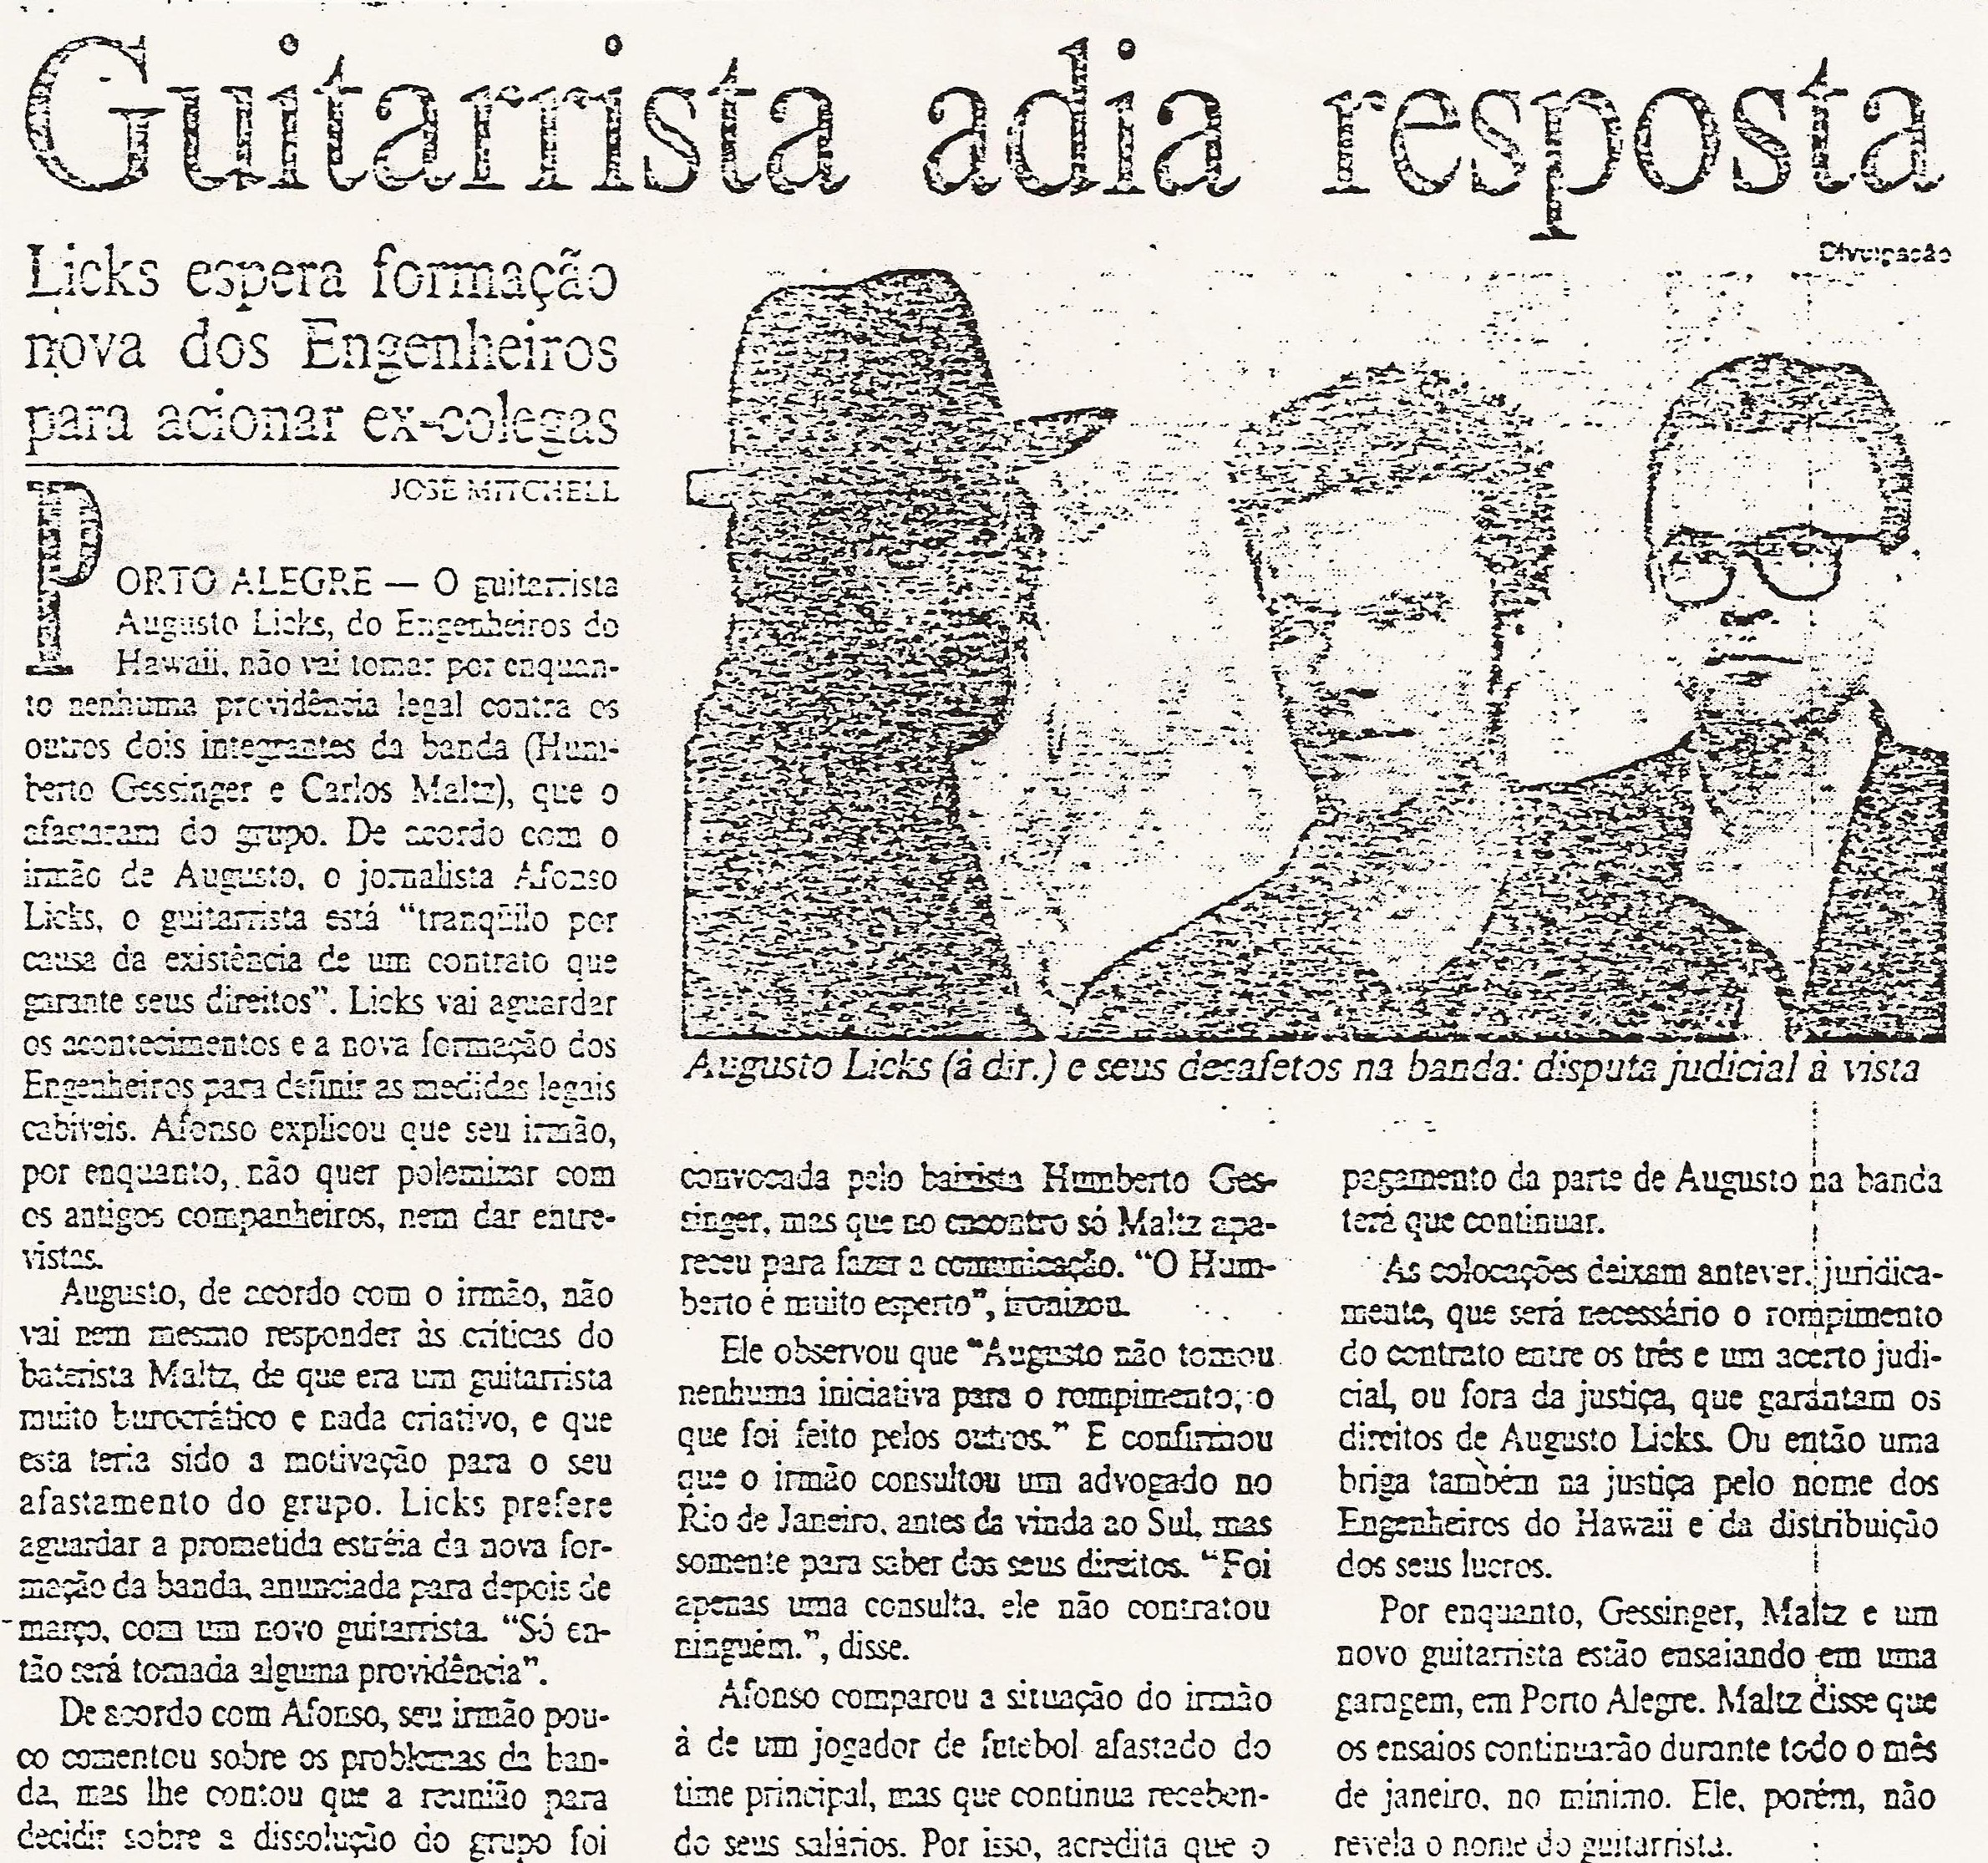 1994 - Guitarrista adia resposta